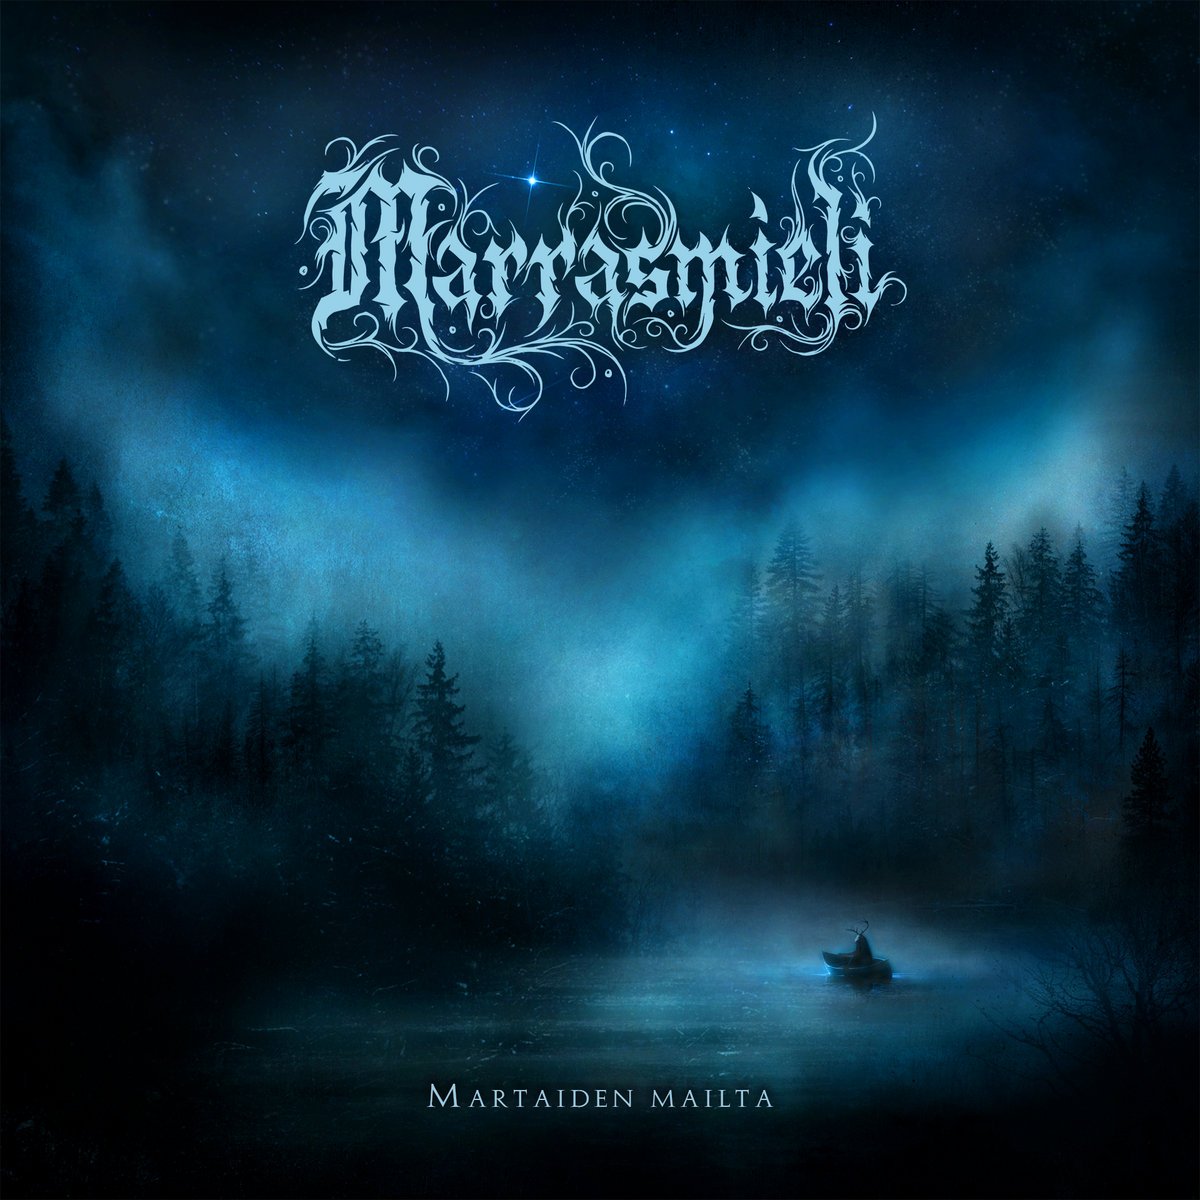 Marrasmieli - Martaiden Mailta (2022) FLAC Download